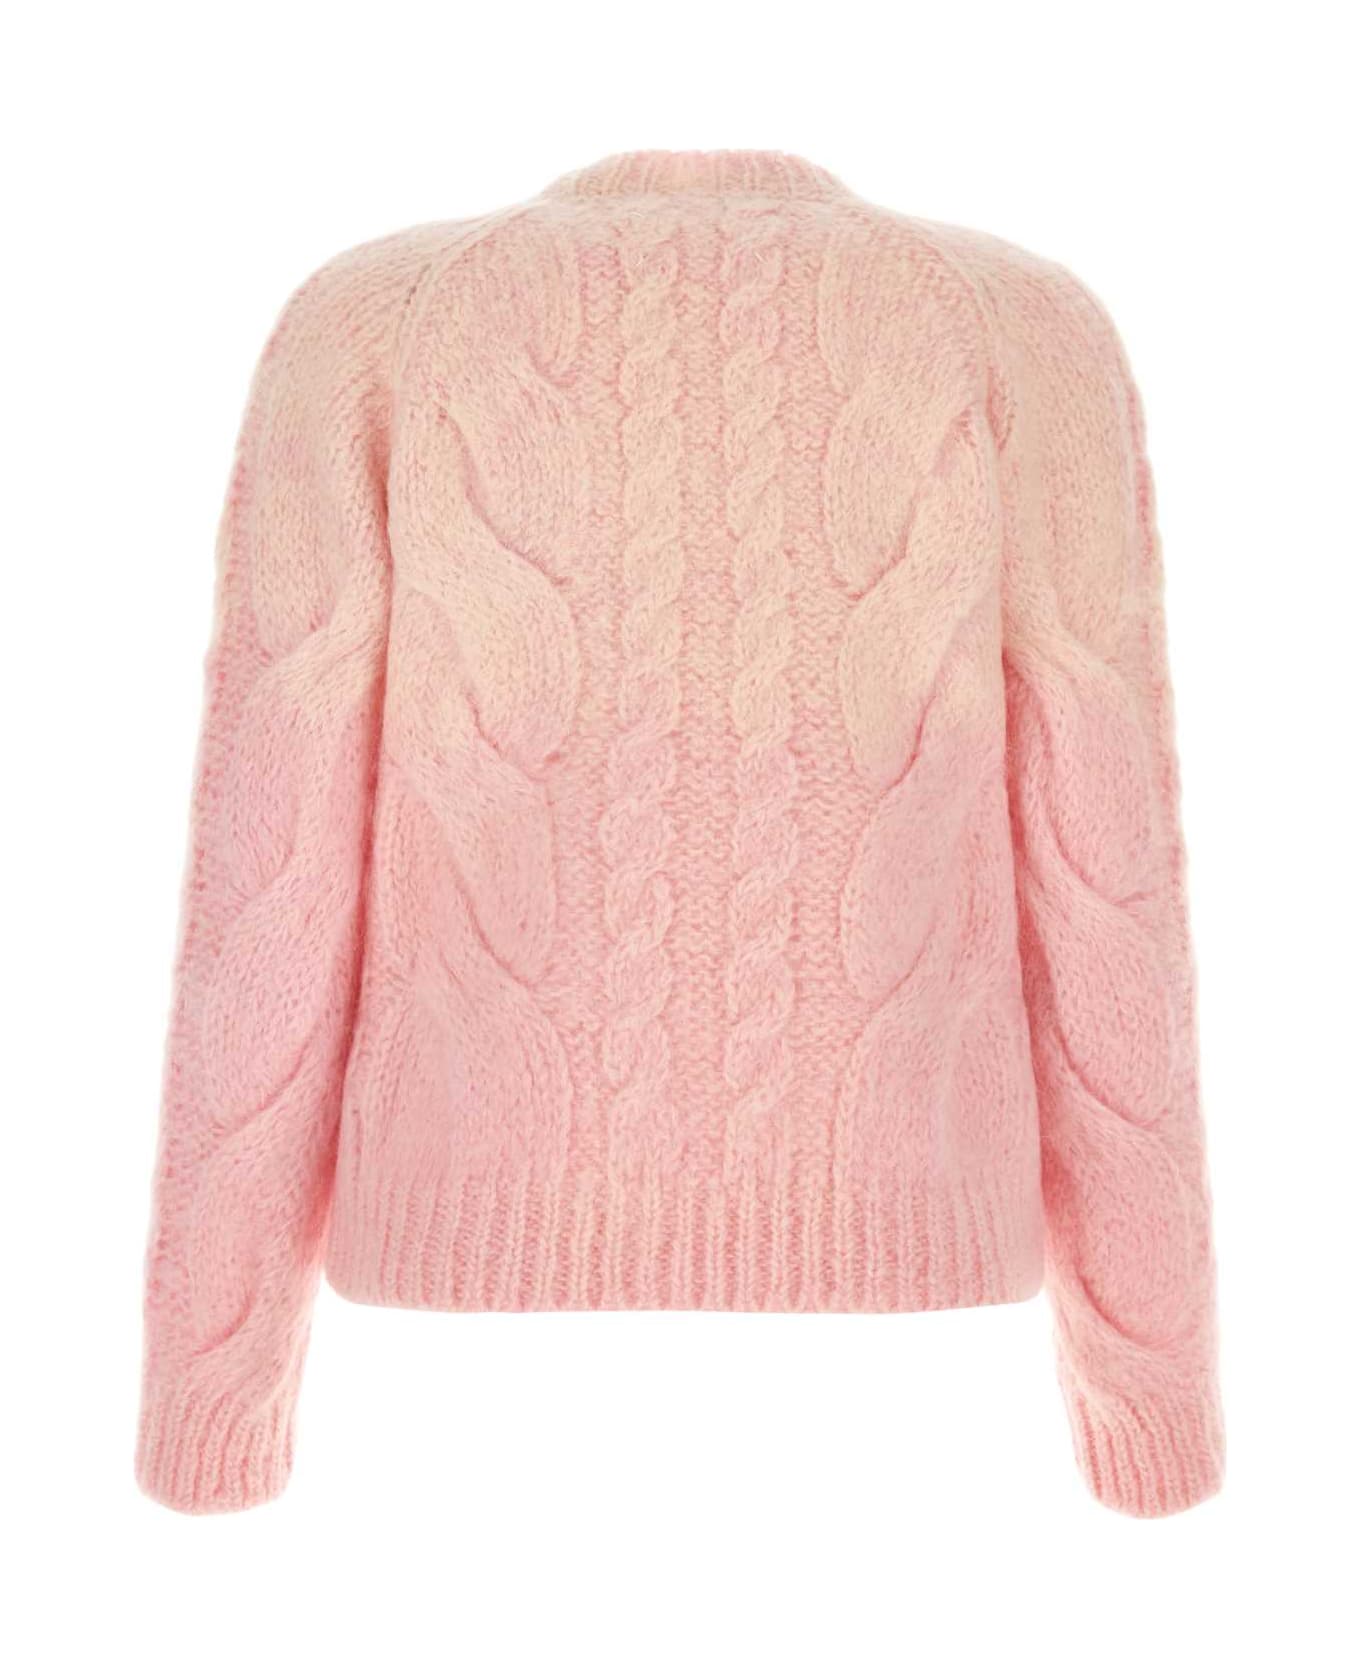 Maison Margiela Mohair Blend Sweater - PINK